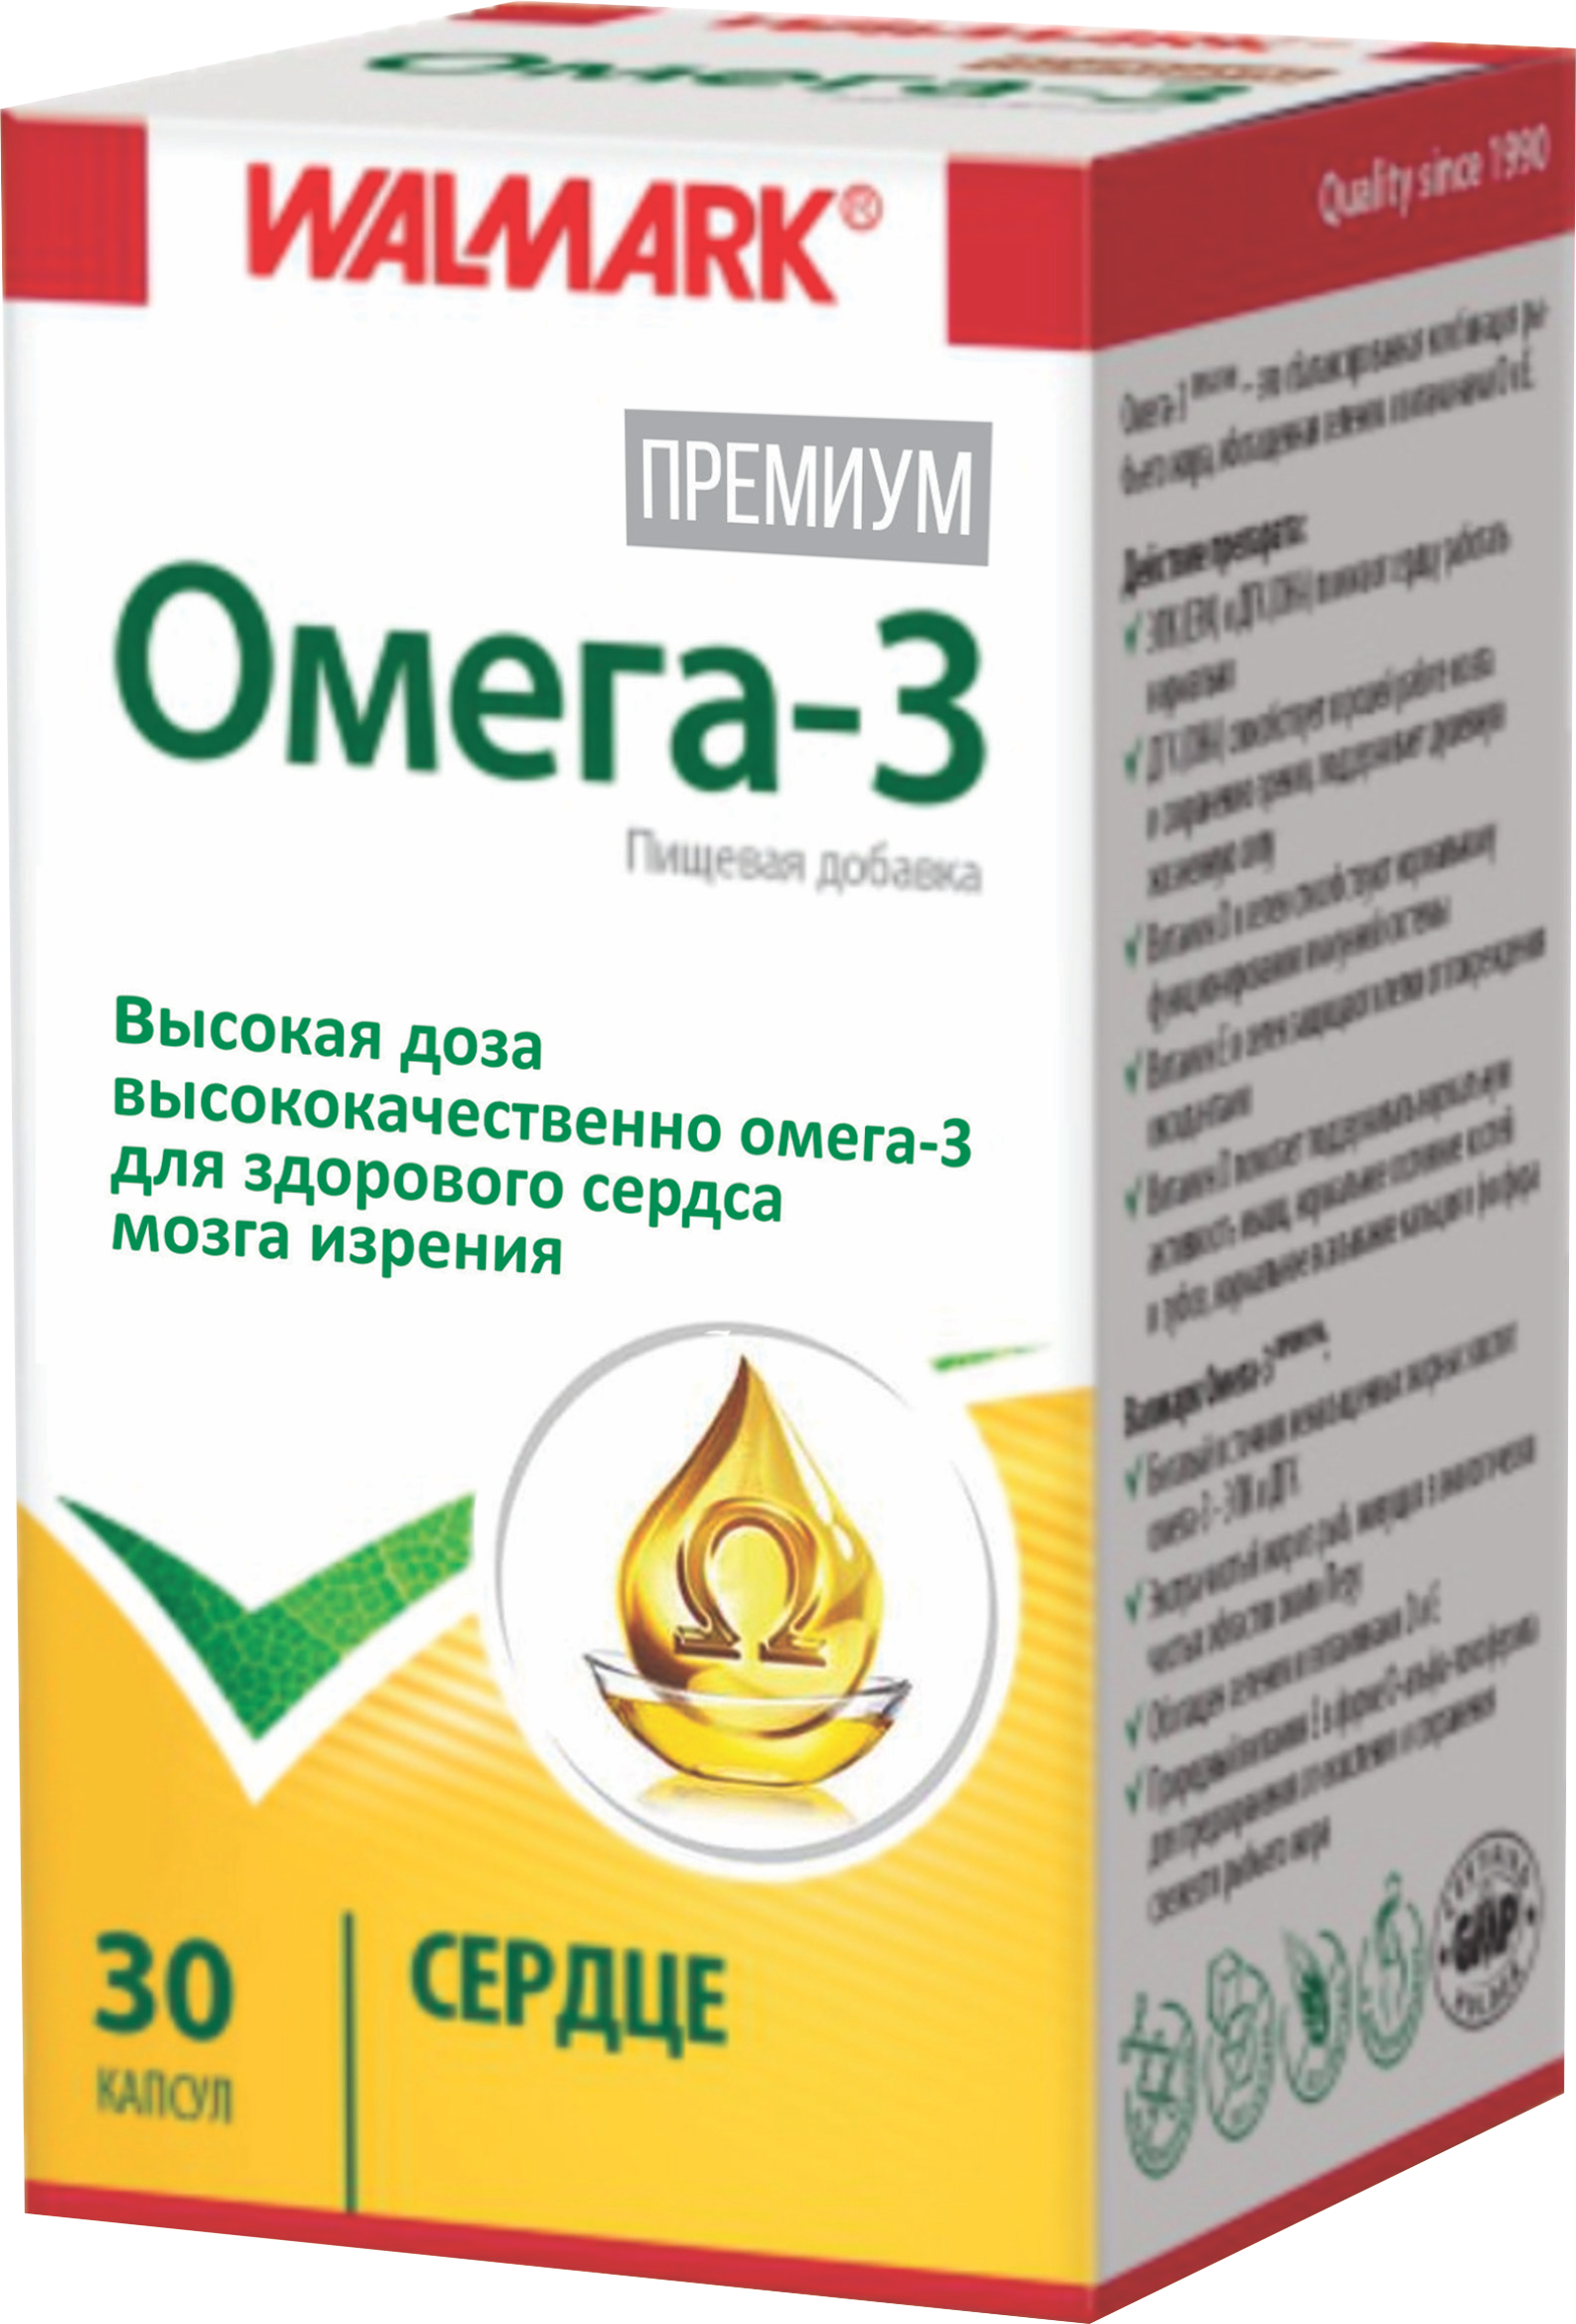 ომეგა-3 პრემიუმი / Omega 3 Premium